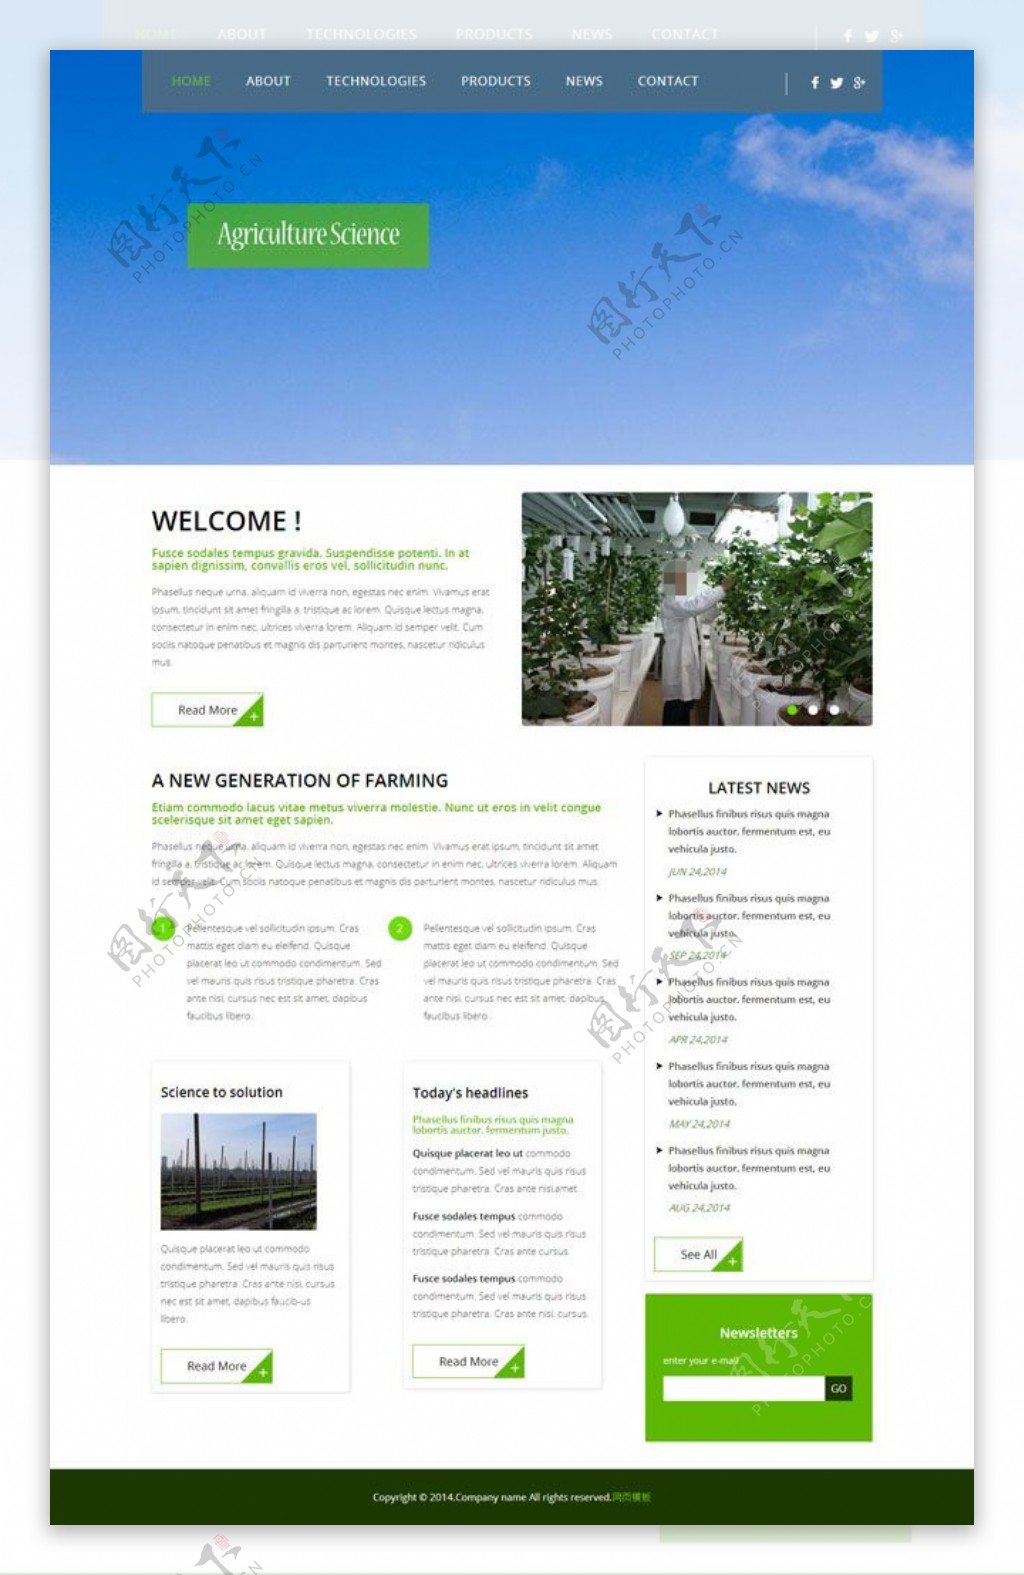 农产品网站模板